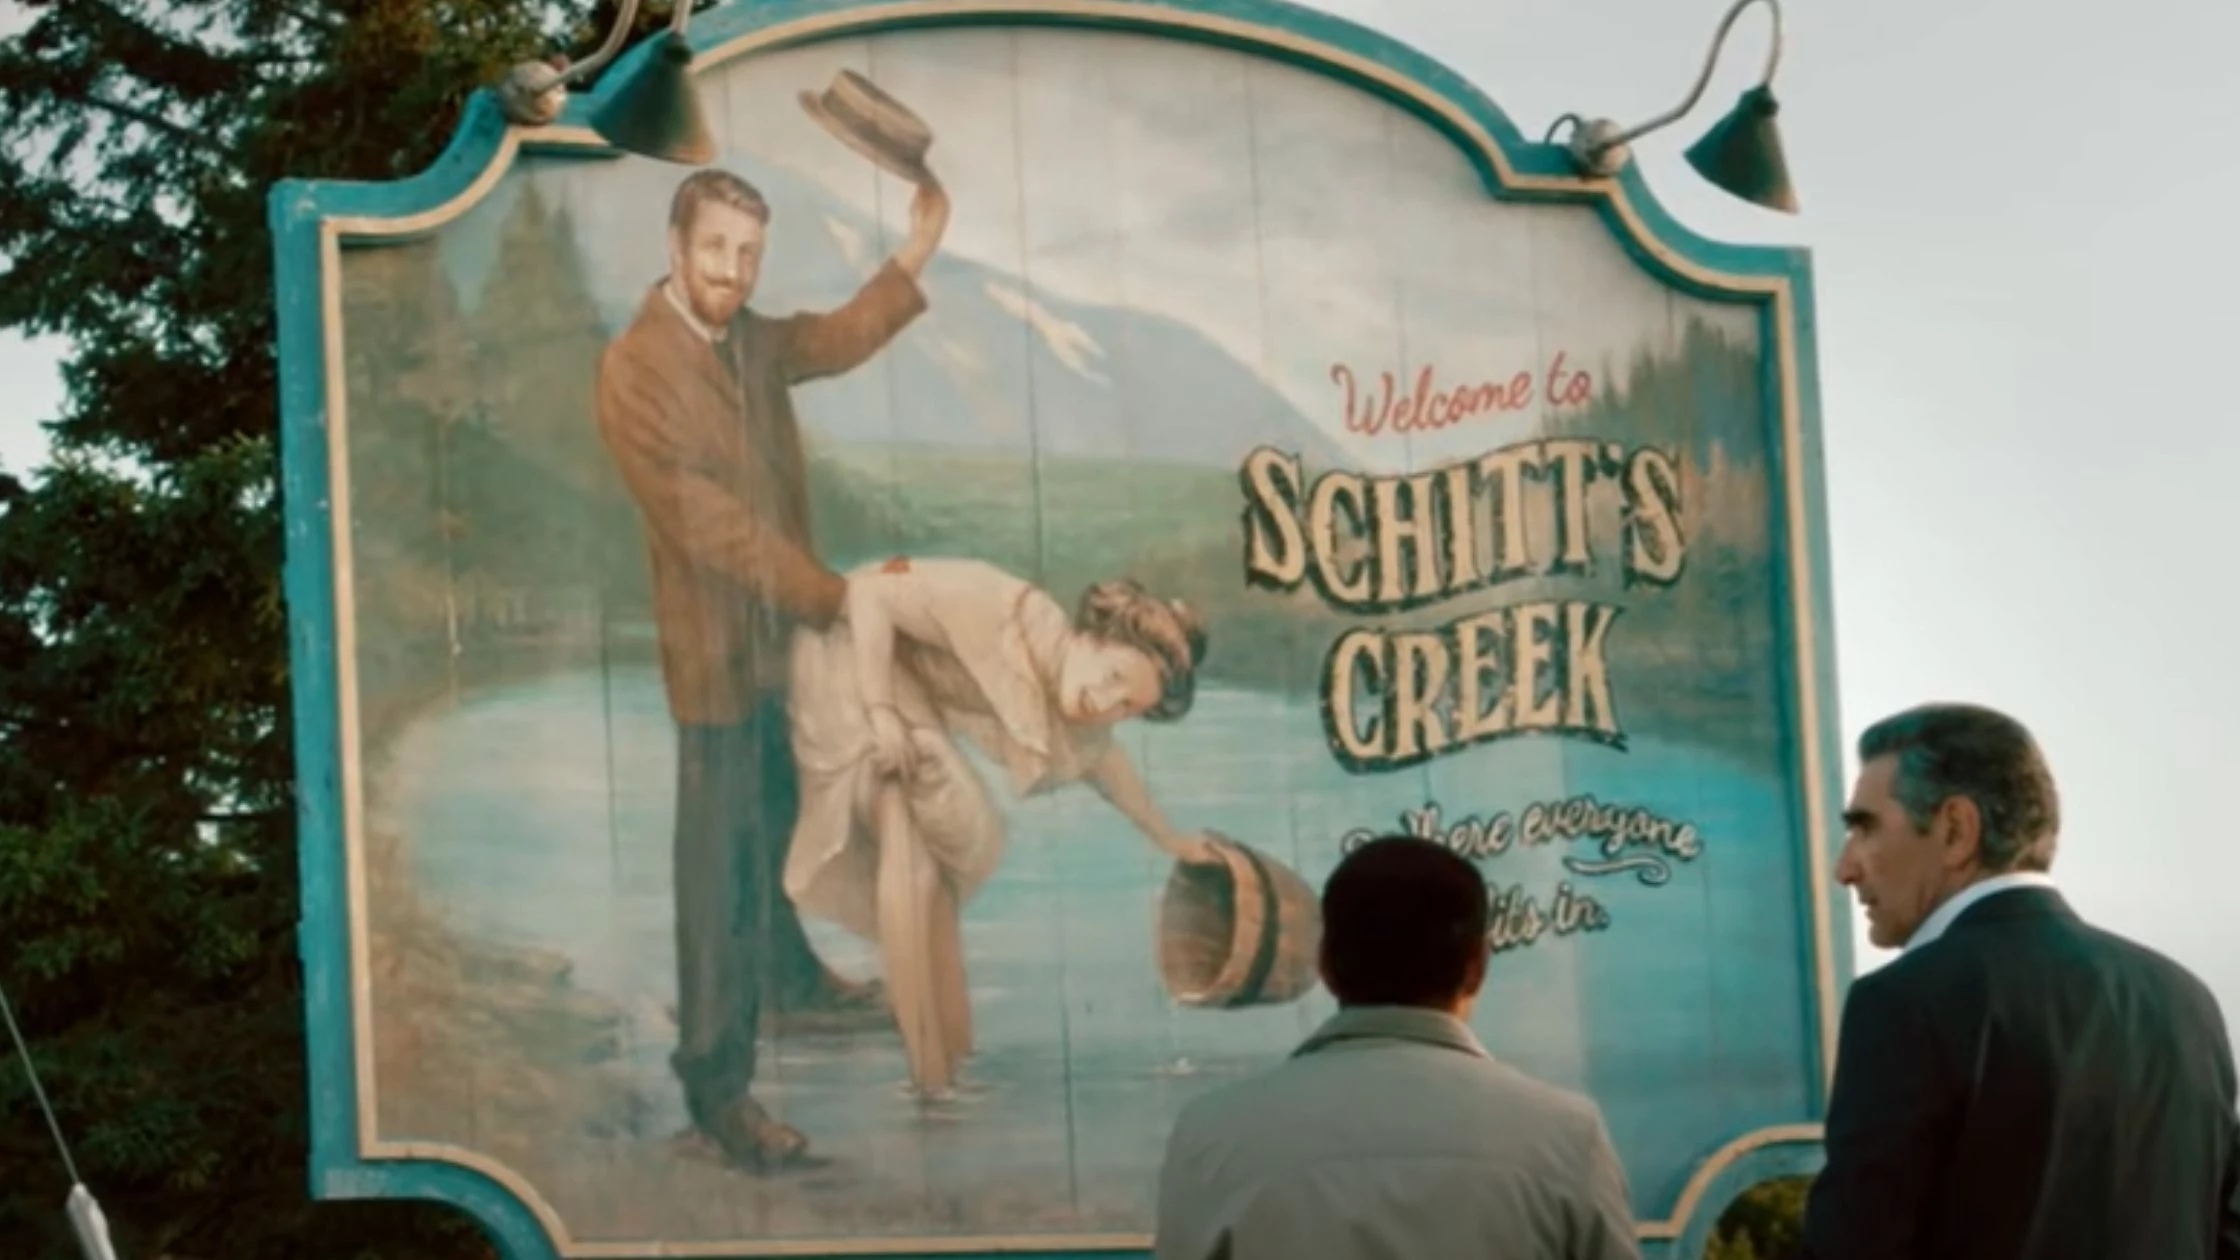 Schitt's Creek' star Annie Murphy stops by Cheers